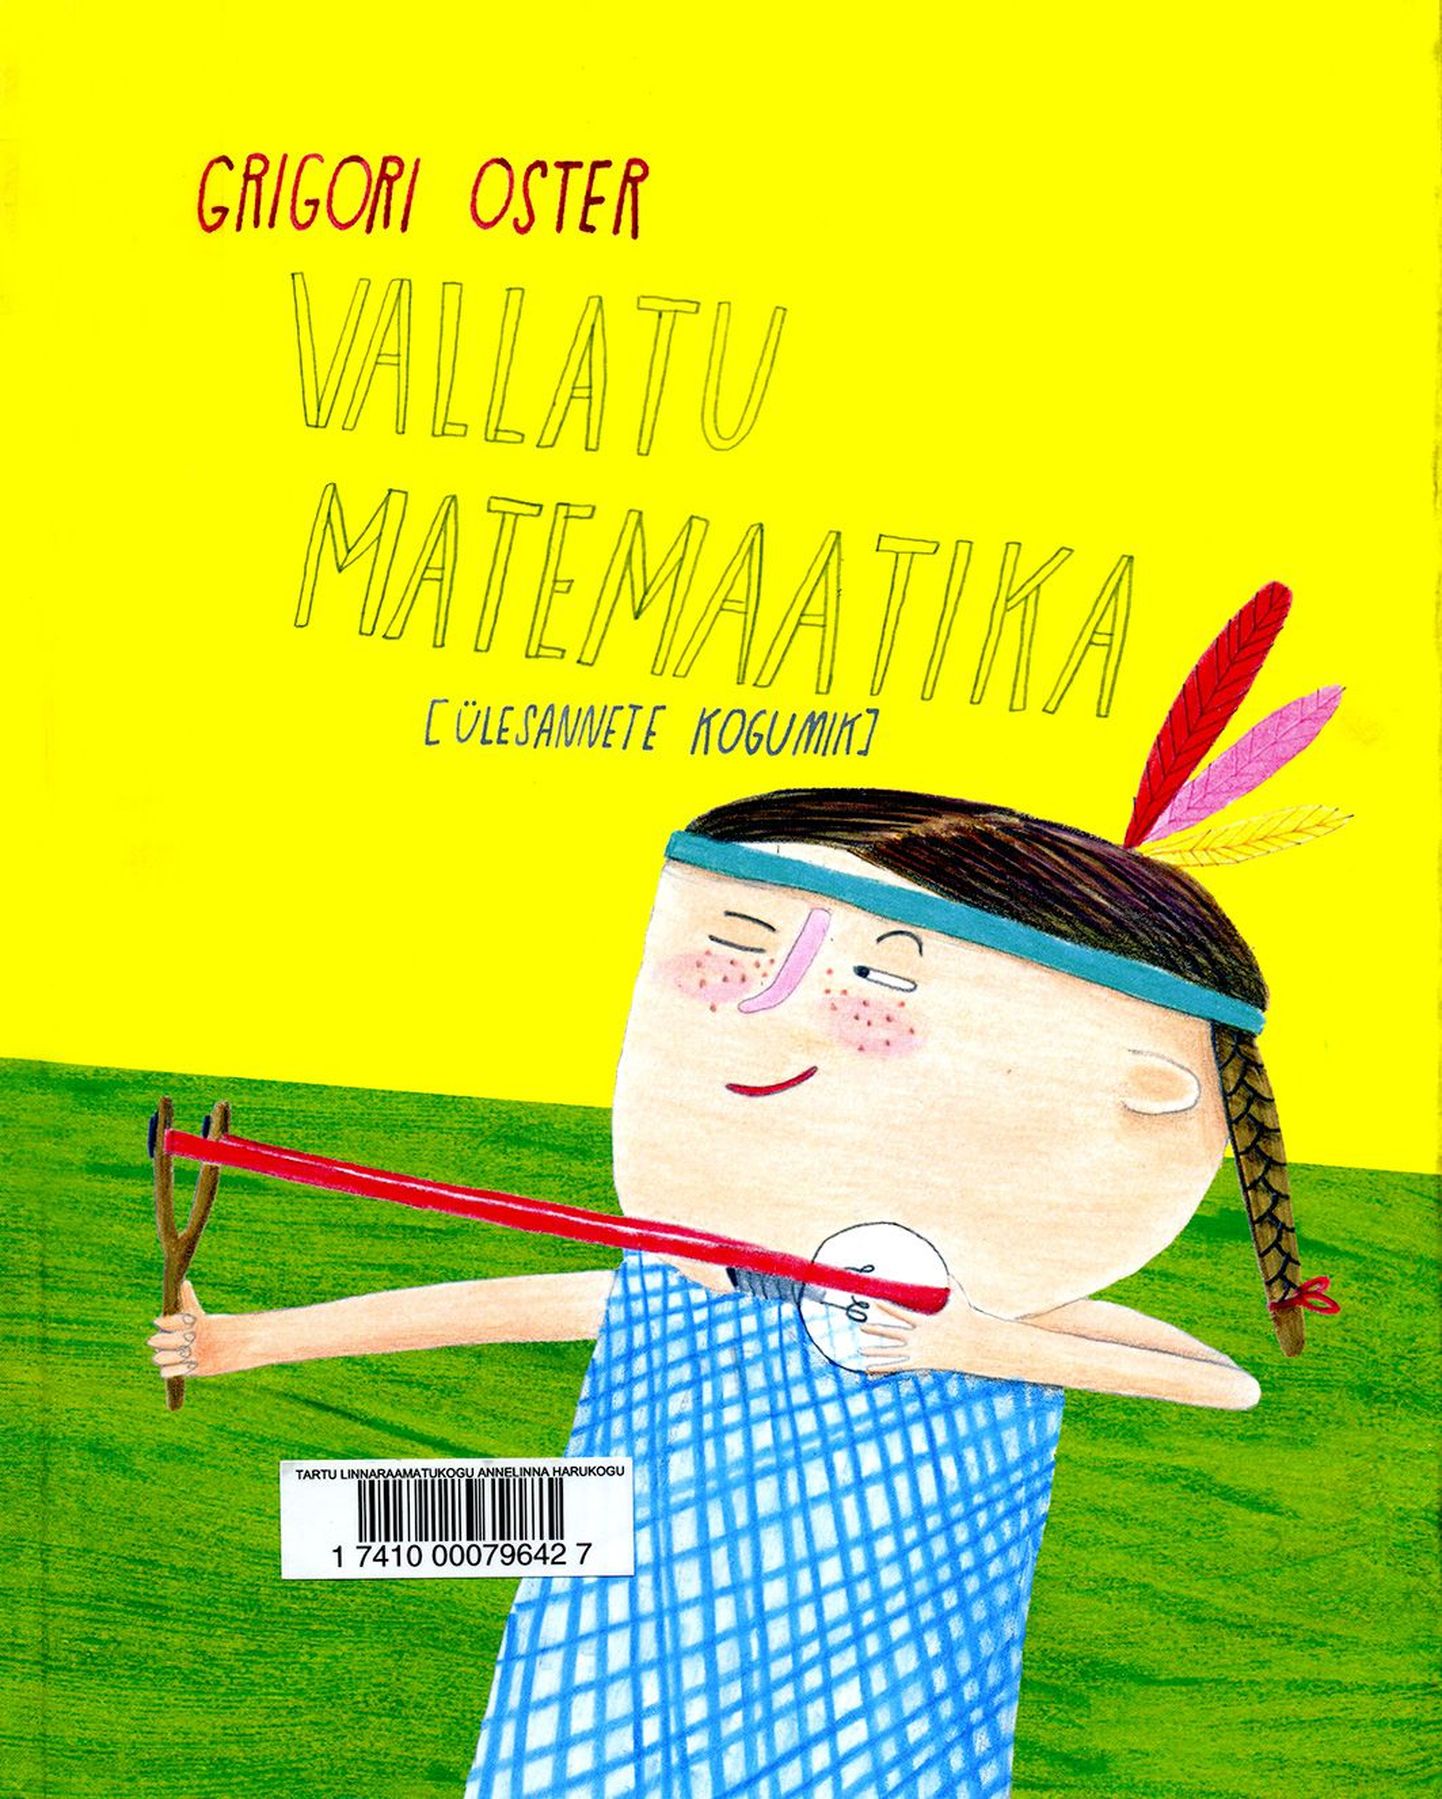 Vene lastekirjaniku Grigori Osteri kohati provotseeriva sisuga matemaatikaülesanded ilmusid vene keeles esimest korda 1999. aastal. 16 aastat hiljem eesti keeles ilmunud teos annab põhjust küsida, 
kas naerma ajavas raamatus on kõik ülesanded koolitundi sobilikud.